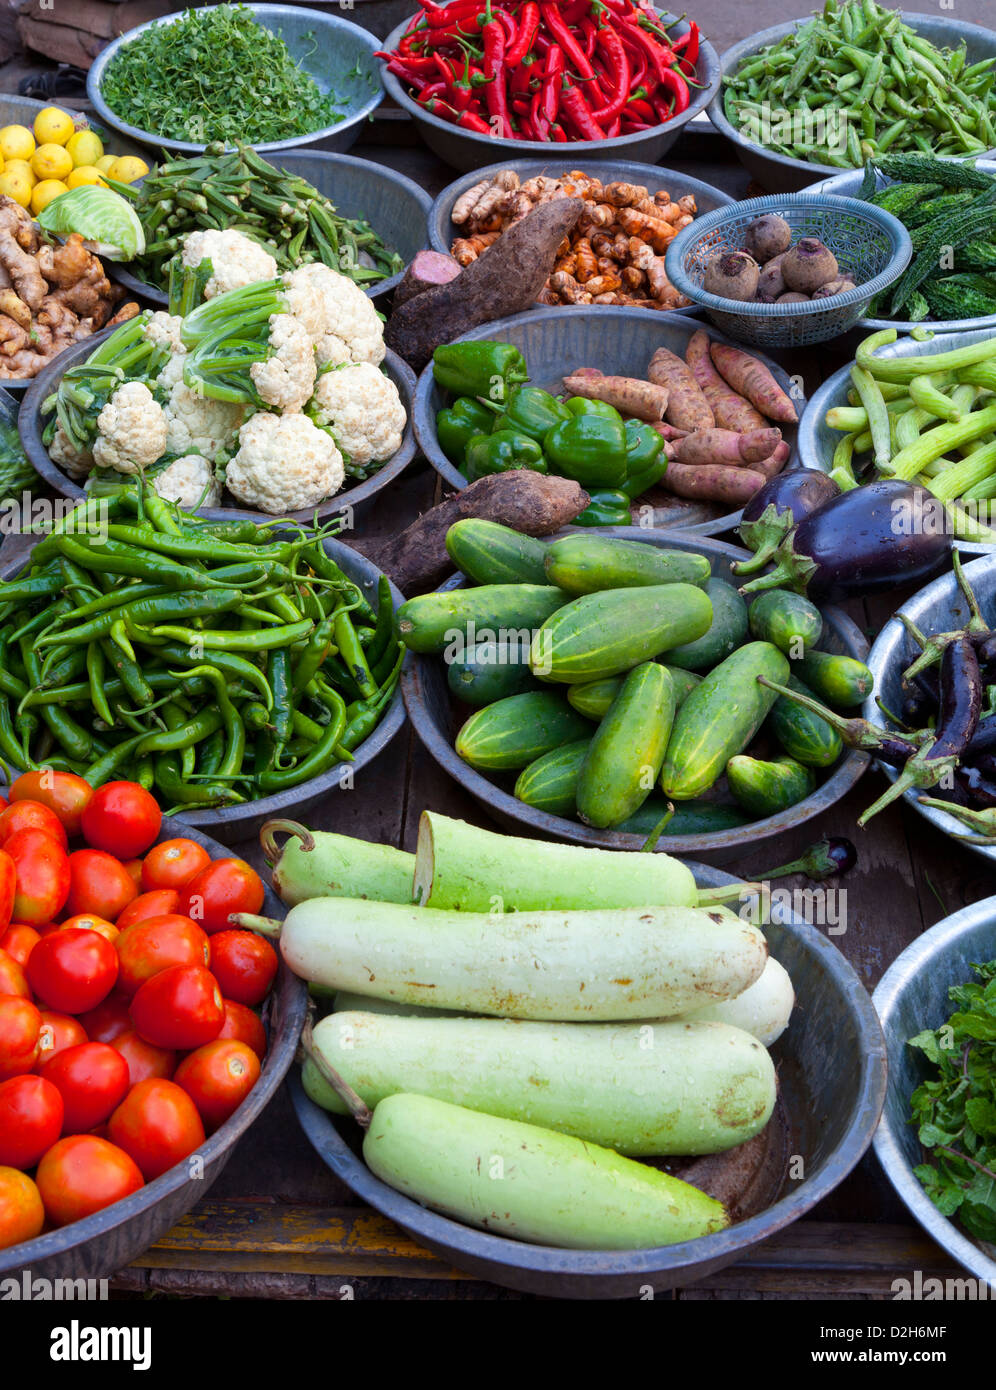 Indien, Rajasthan, Jodhpur Gemüse ordentlich angelegt am stall Stockfoto